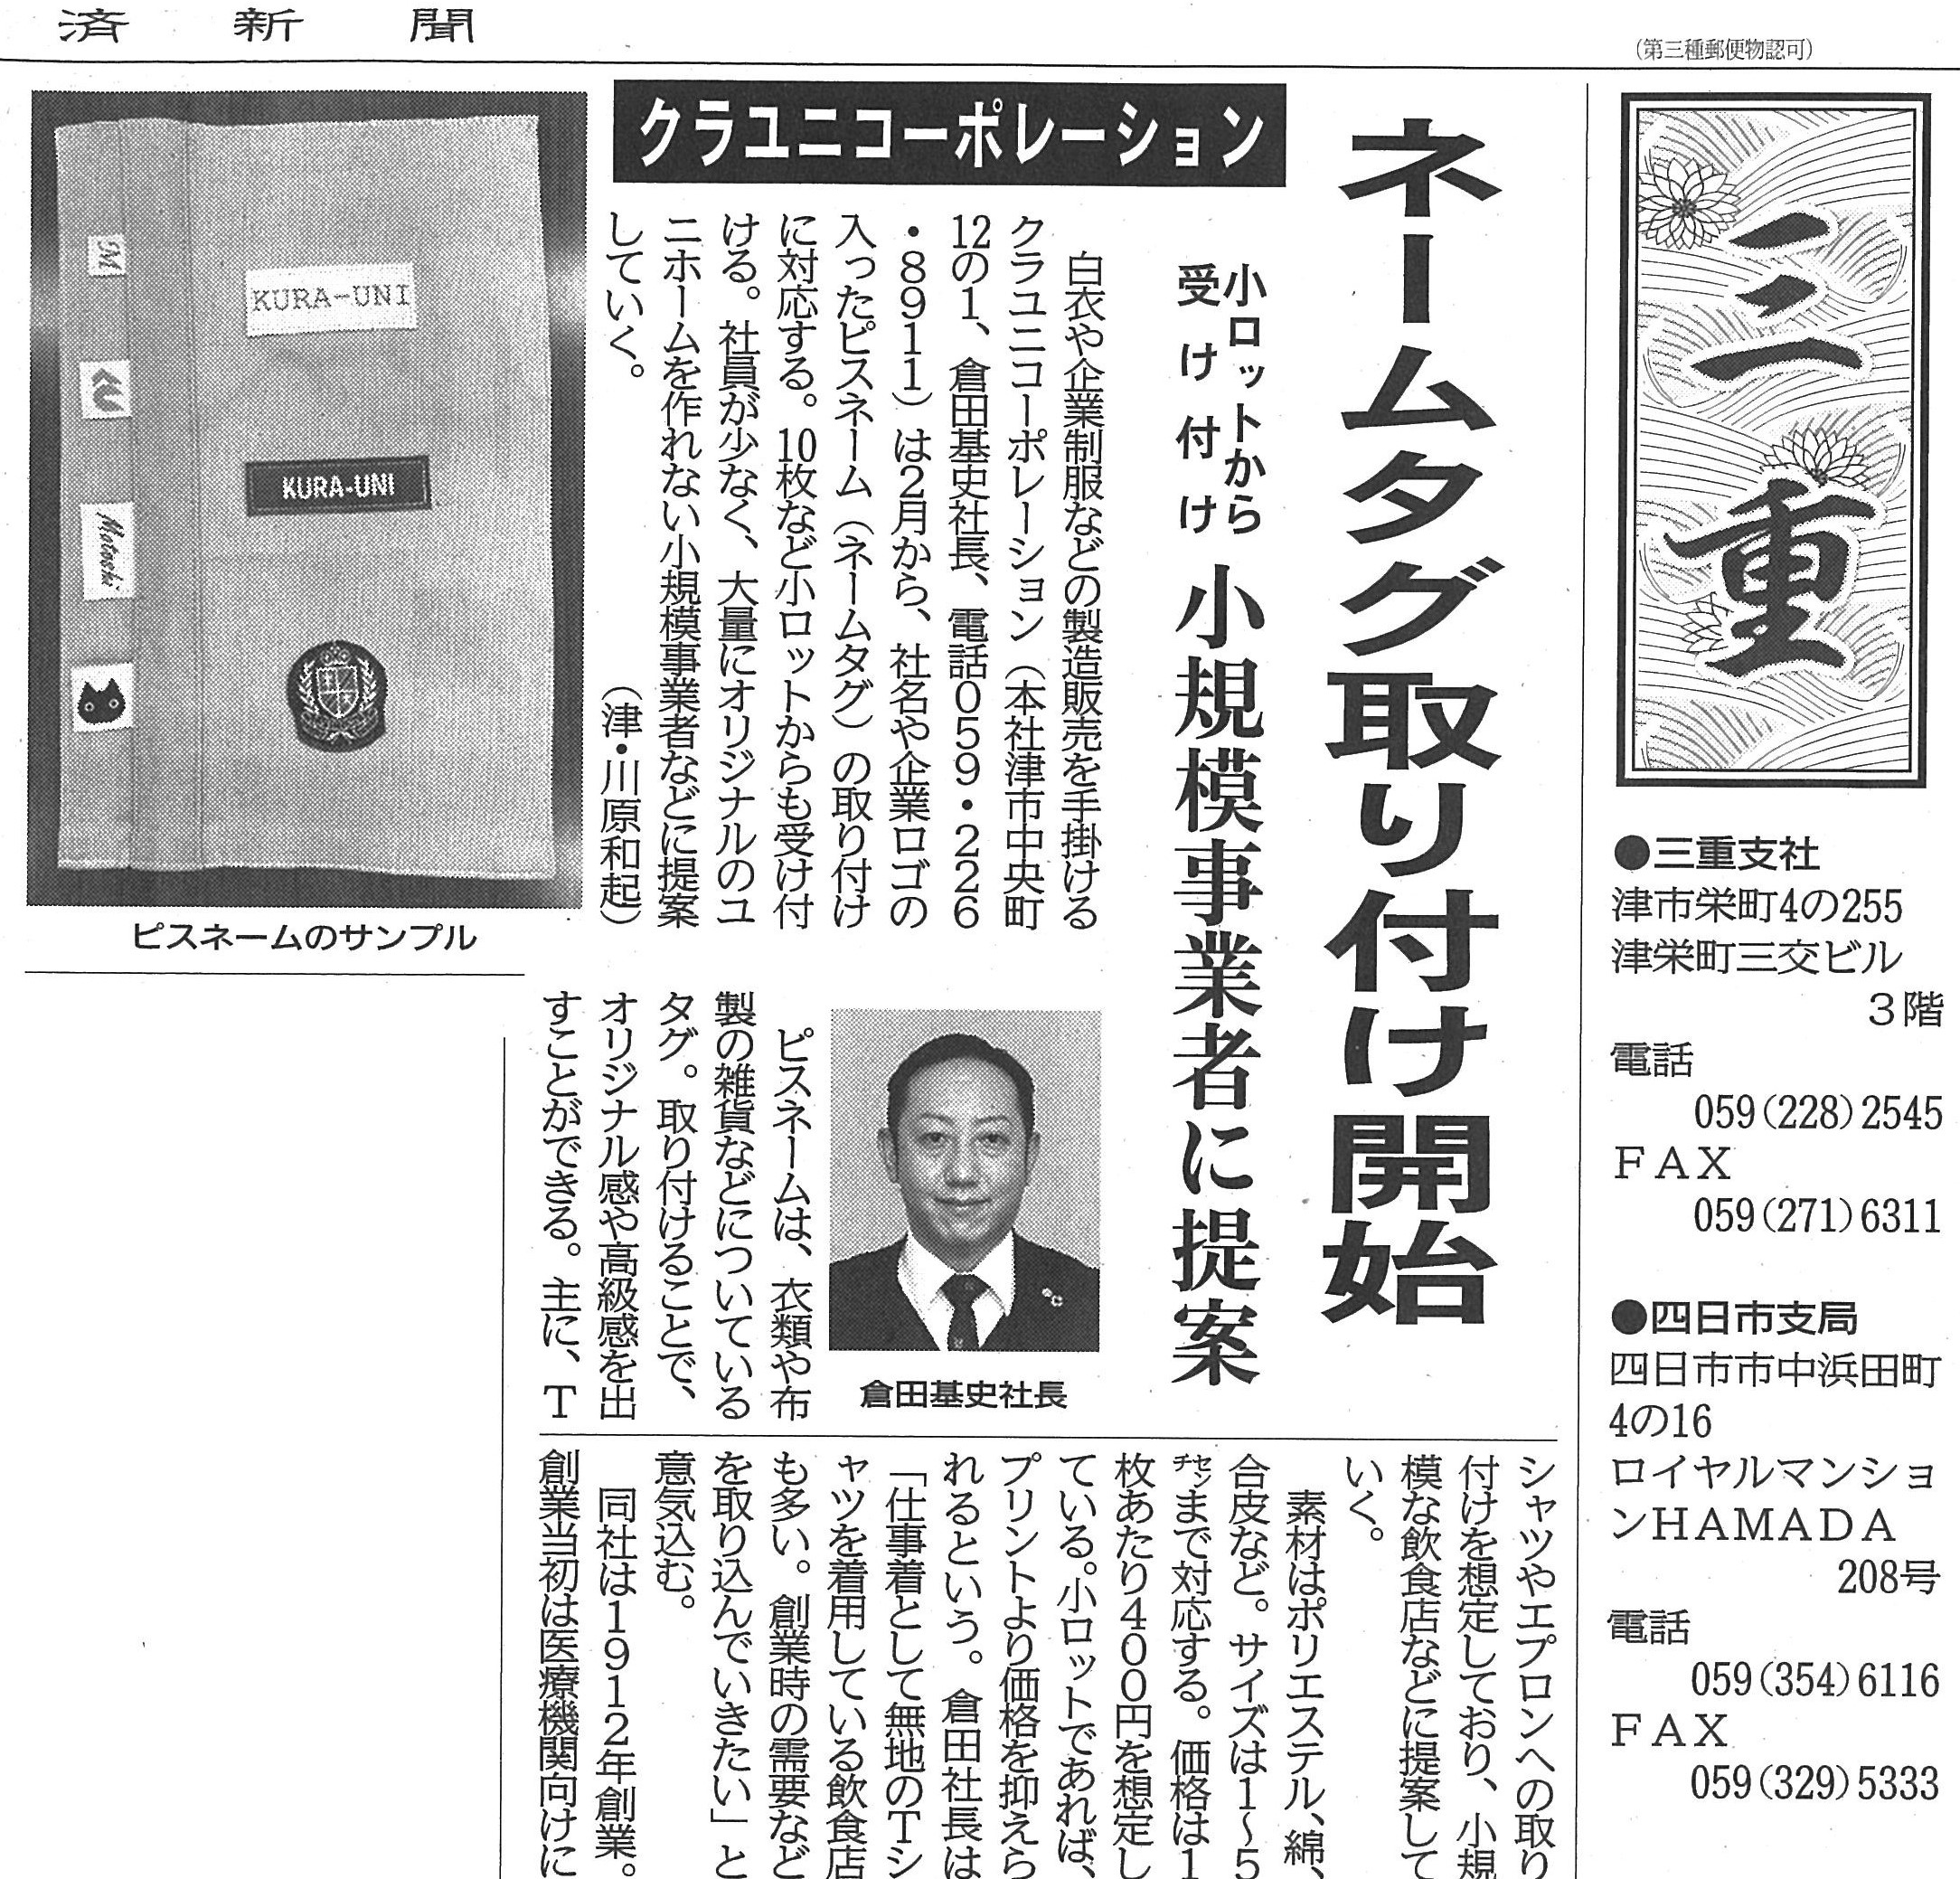 クラユニのオリジナル「ピスネーム」製作開始が中部経済新聞(1/28)に掲載されました。